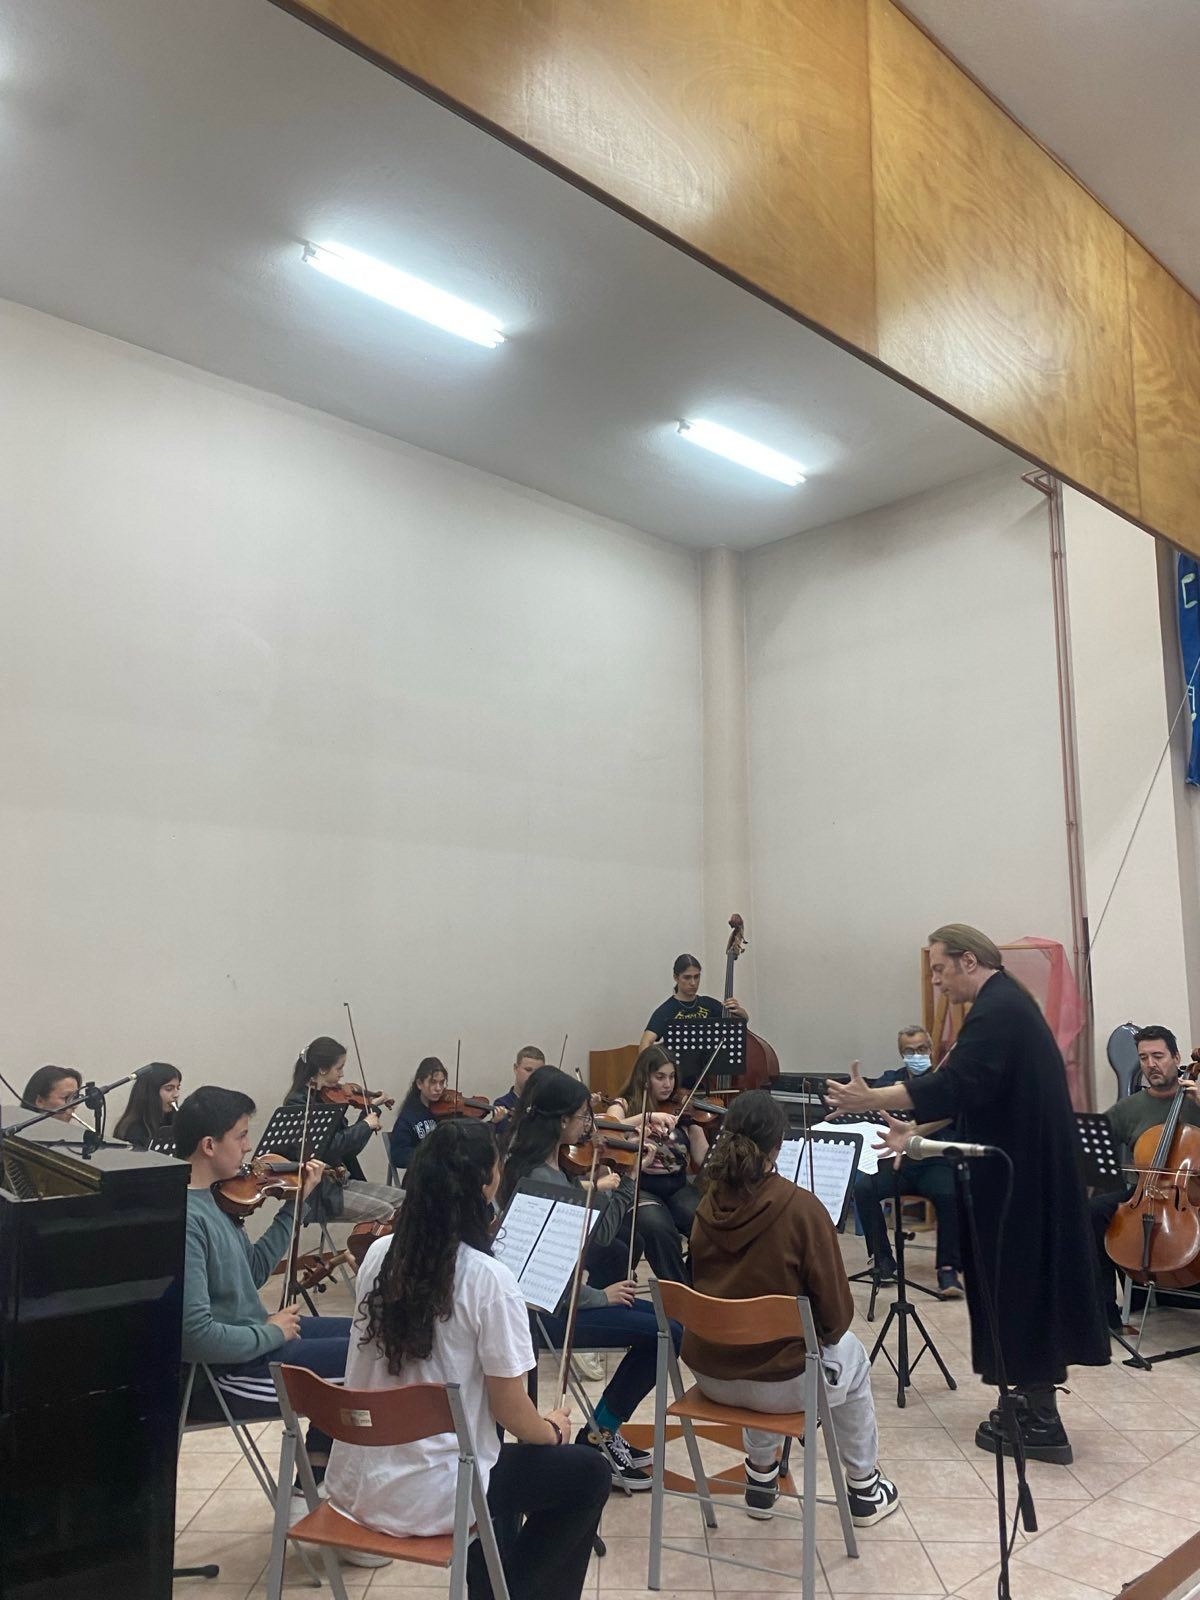 Διήμερο σεμινάριο μουσικής ερμηνείας από τον κ. Στέφανο Κορκολή και την κ. Σοφία Μανουσάκη στο Μουσικό Σχολείο Κέρκυρας